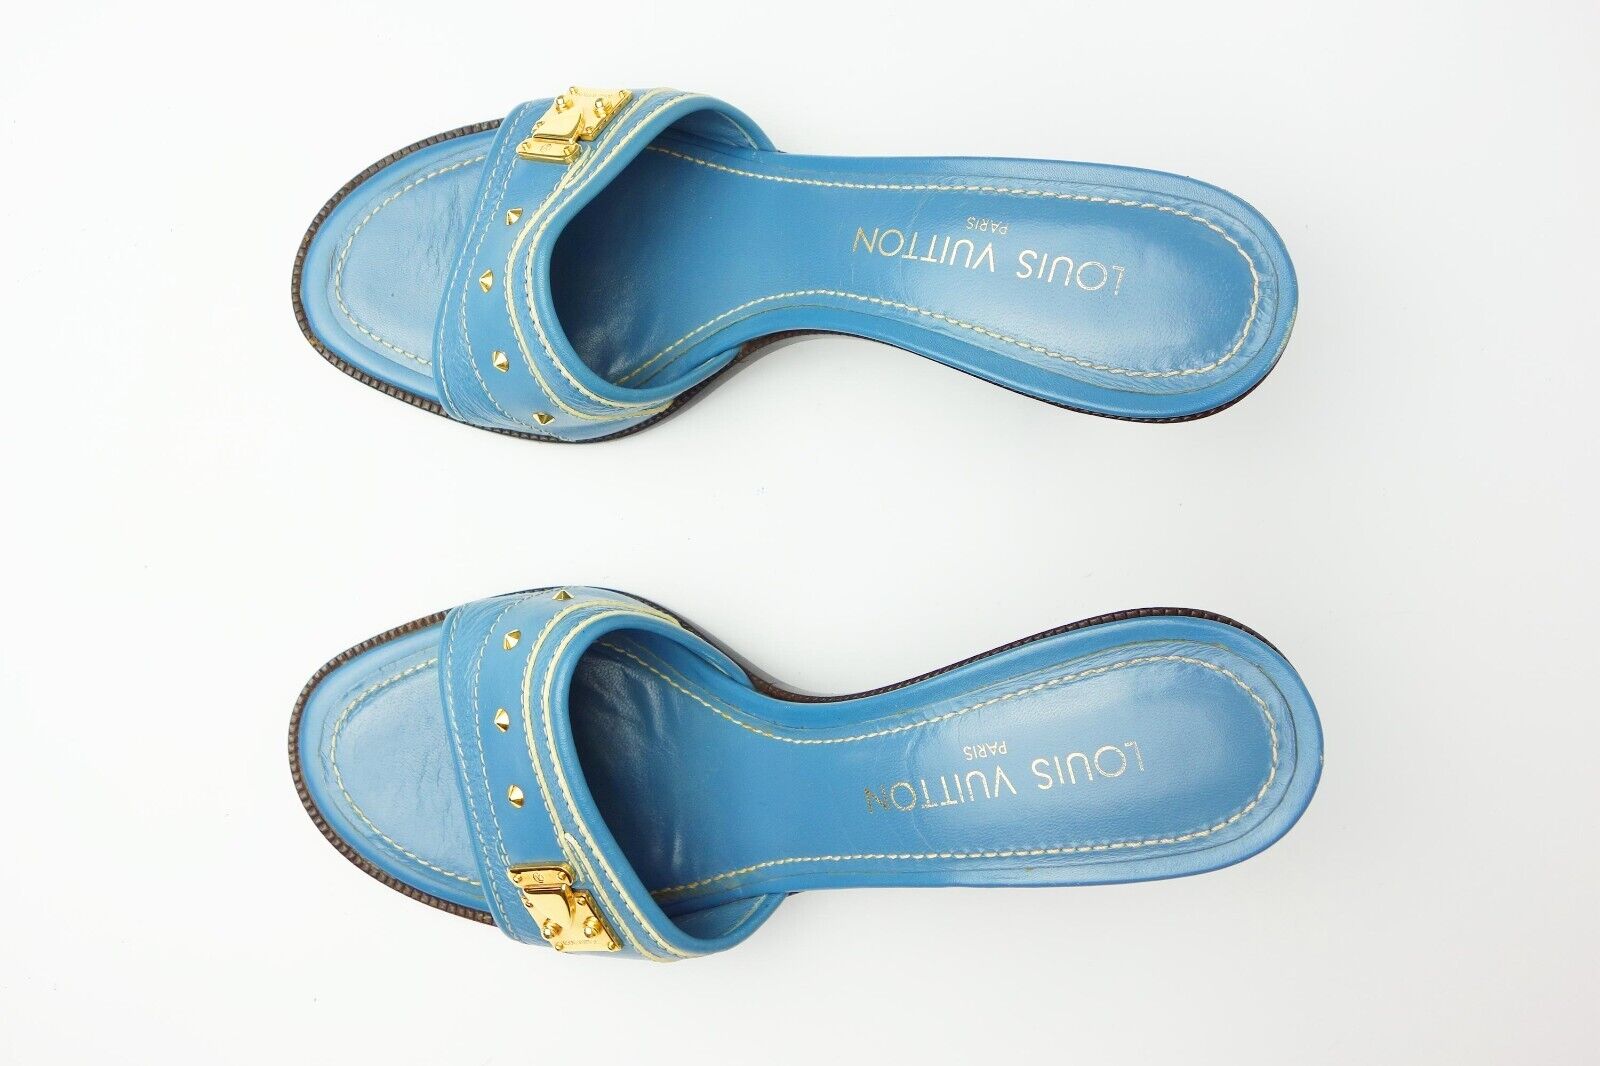 Louis Vuitton Vintage Blue Leather Embellished Buckle Slide Sandals Logo Heels